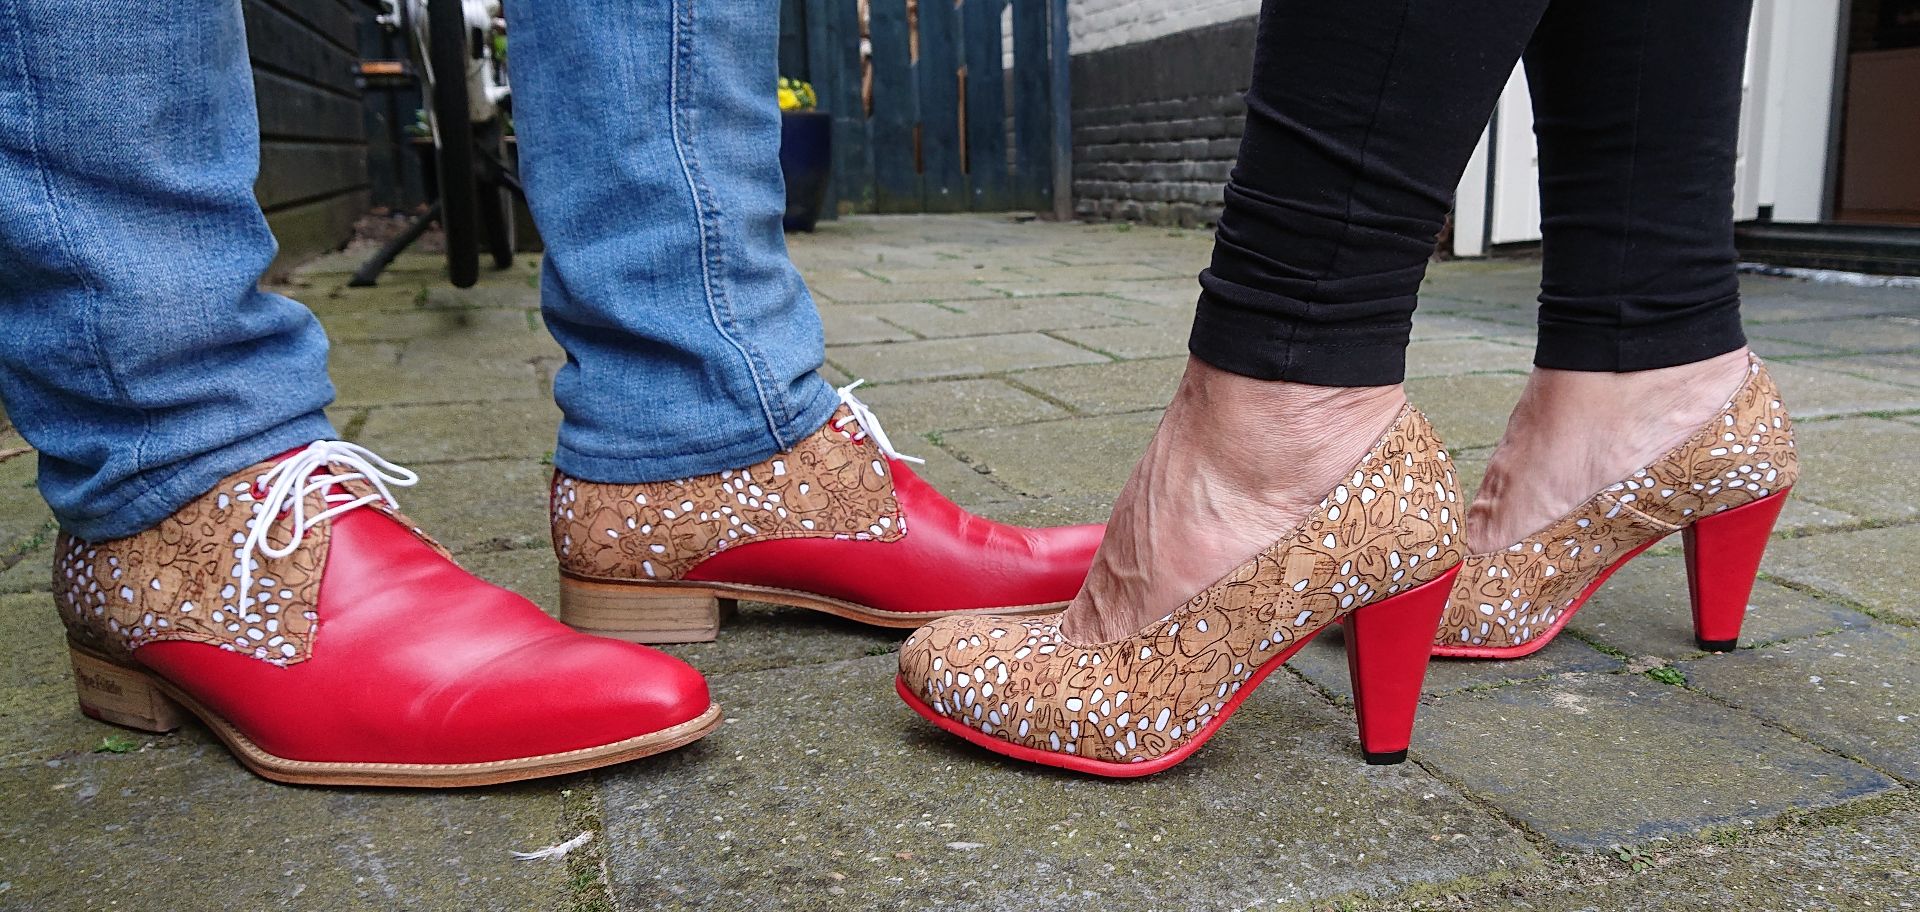 Shoelia kurk wit schoenen met rood leer matchende set zelf samenstellen trouwschoenen